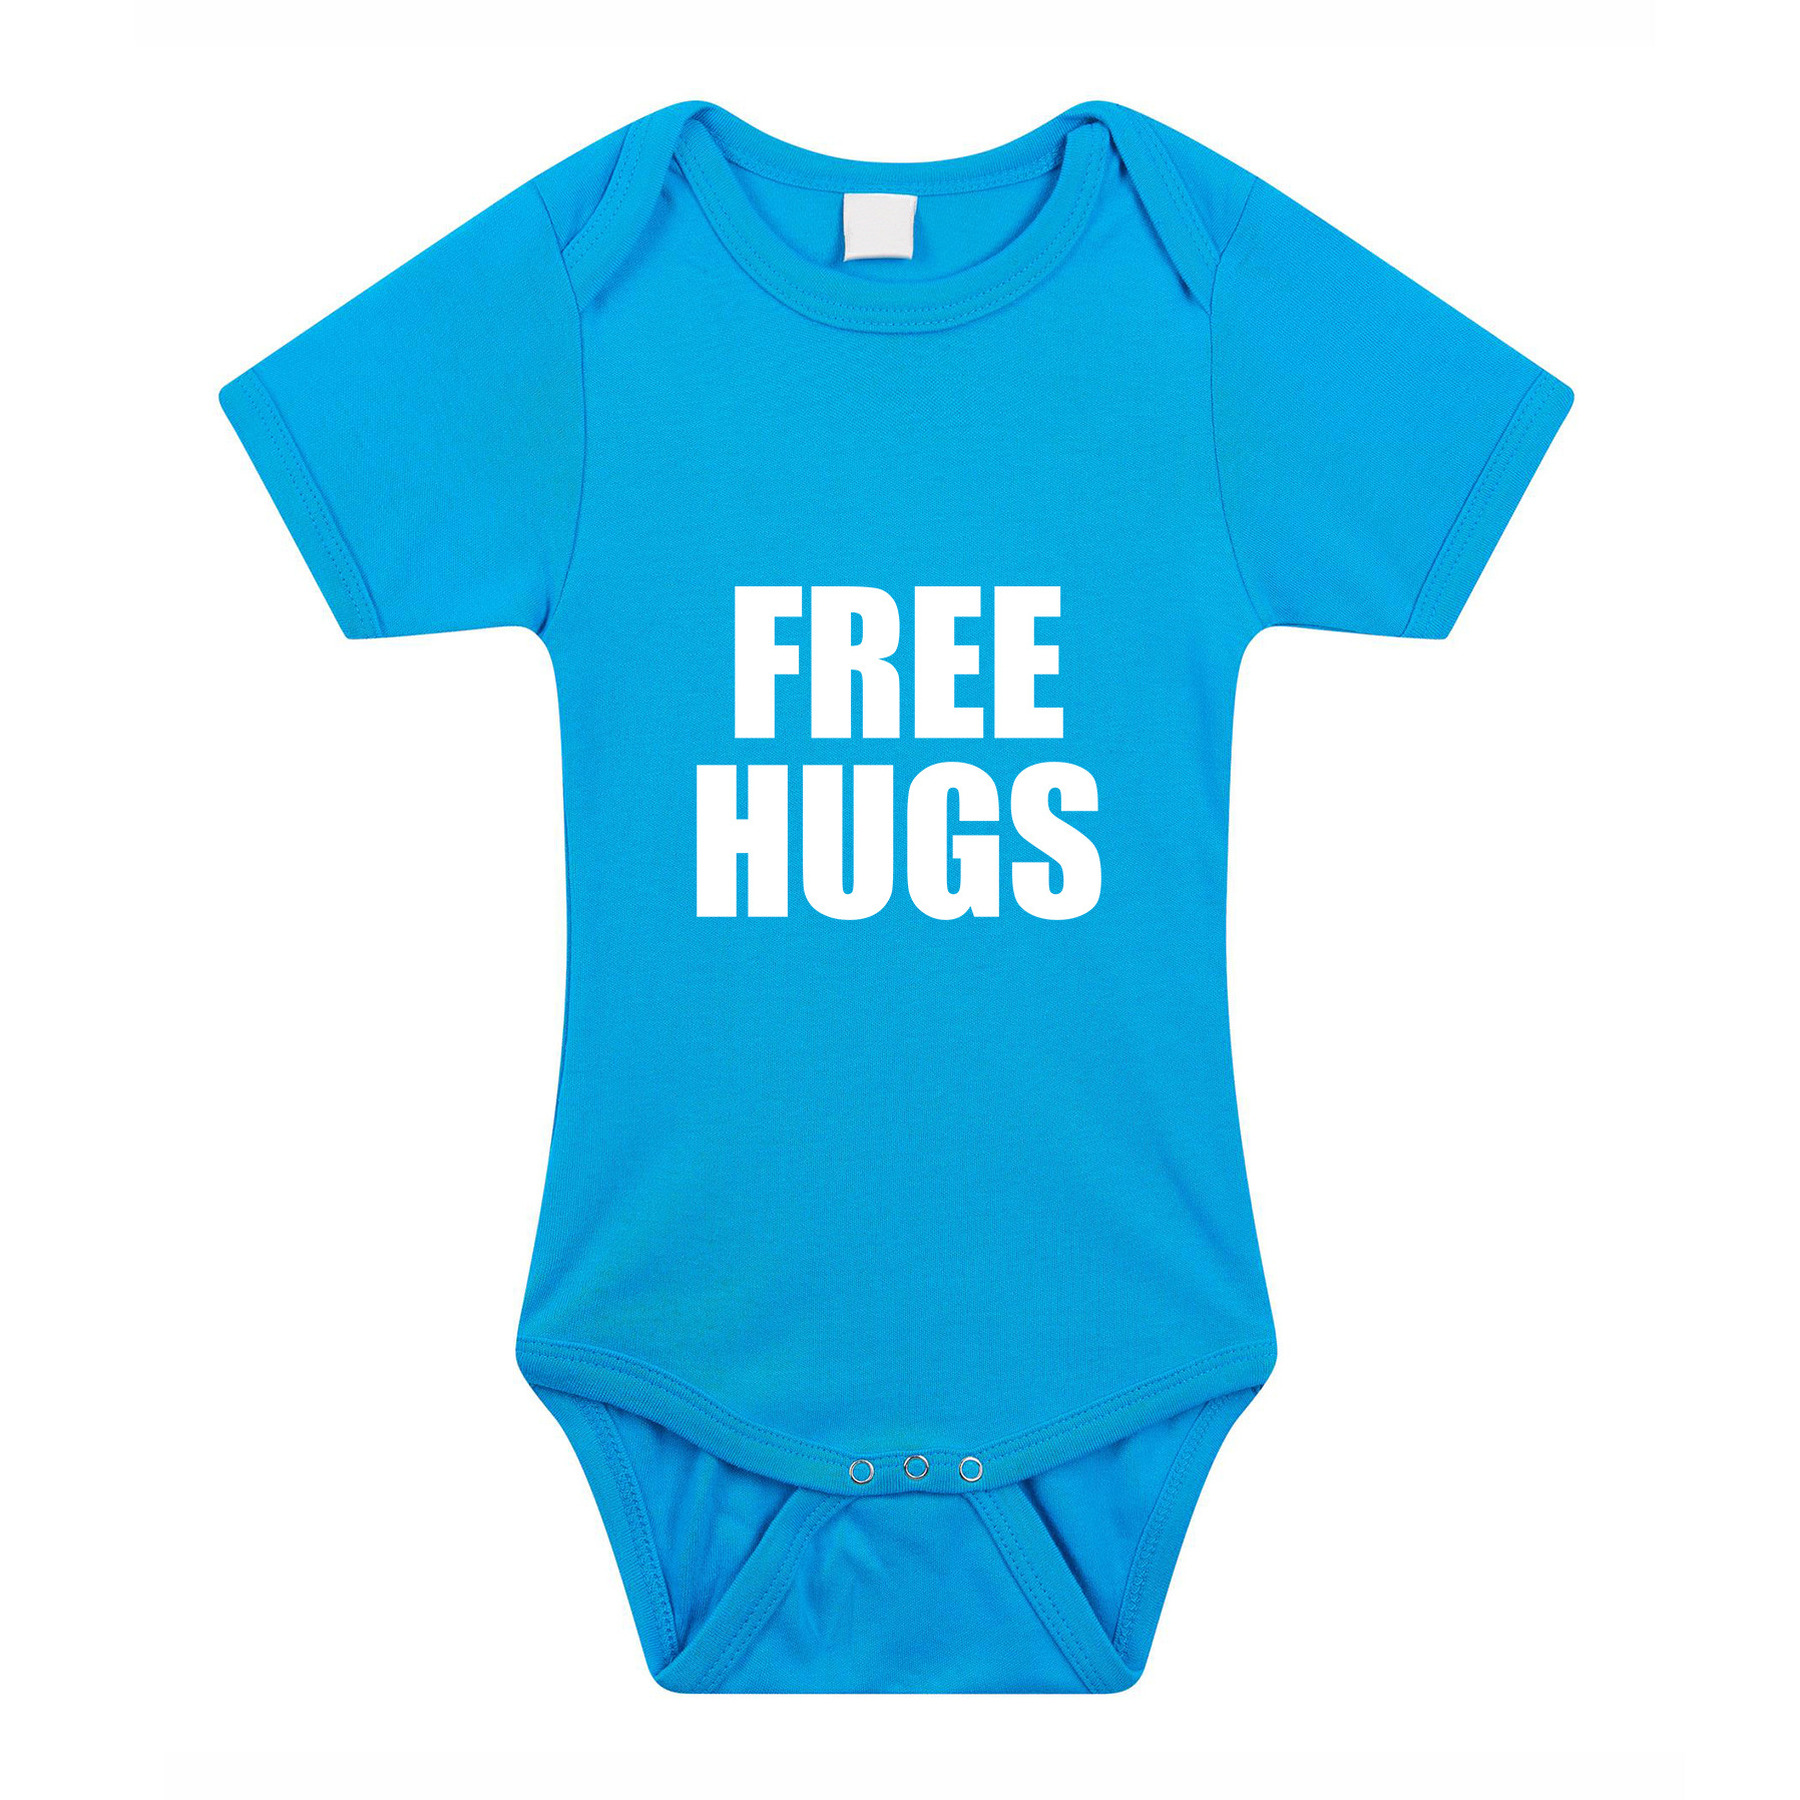 Free hugs cadeau baby rompertje blauw jongens